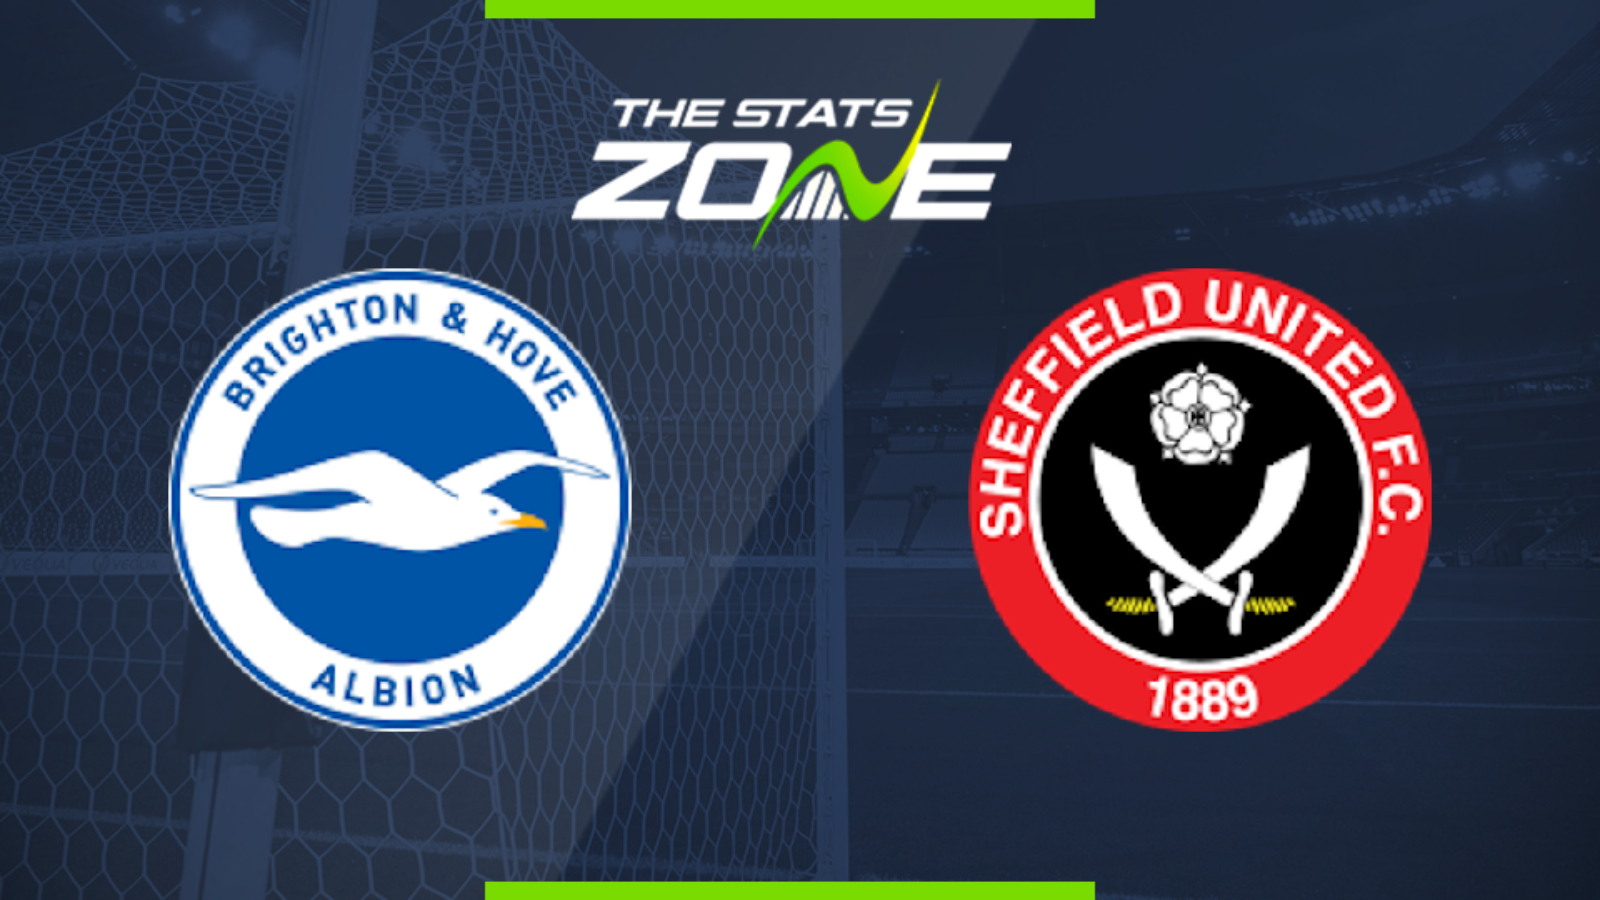 Sheffield united vs brighton